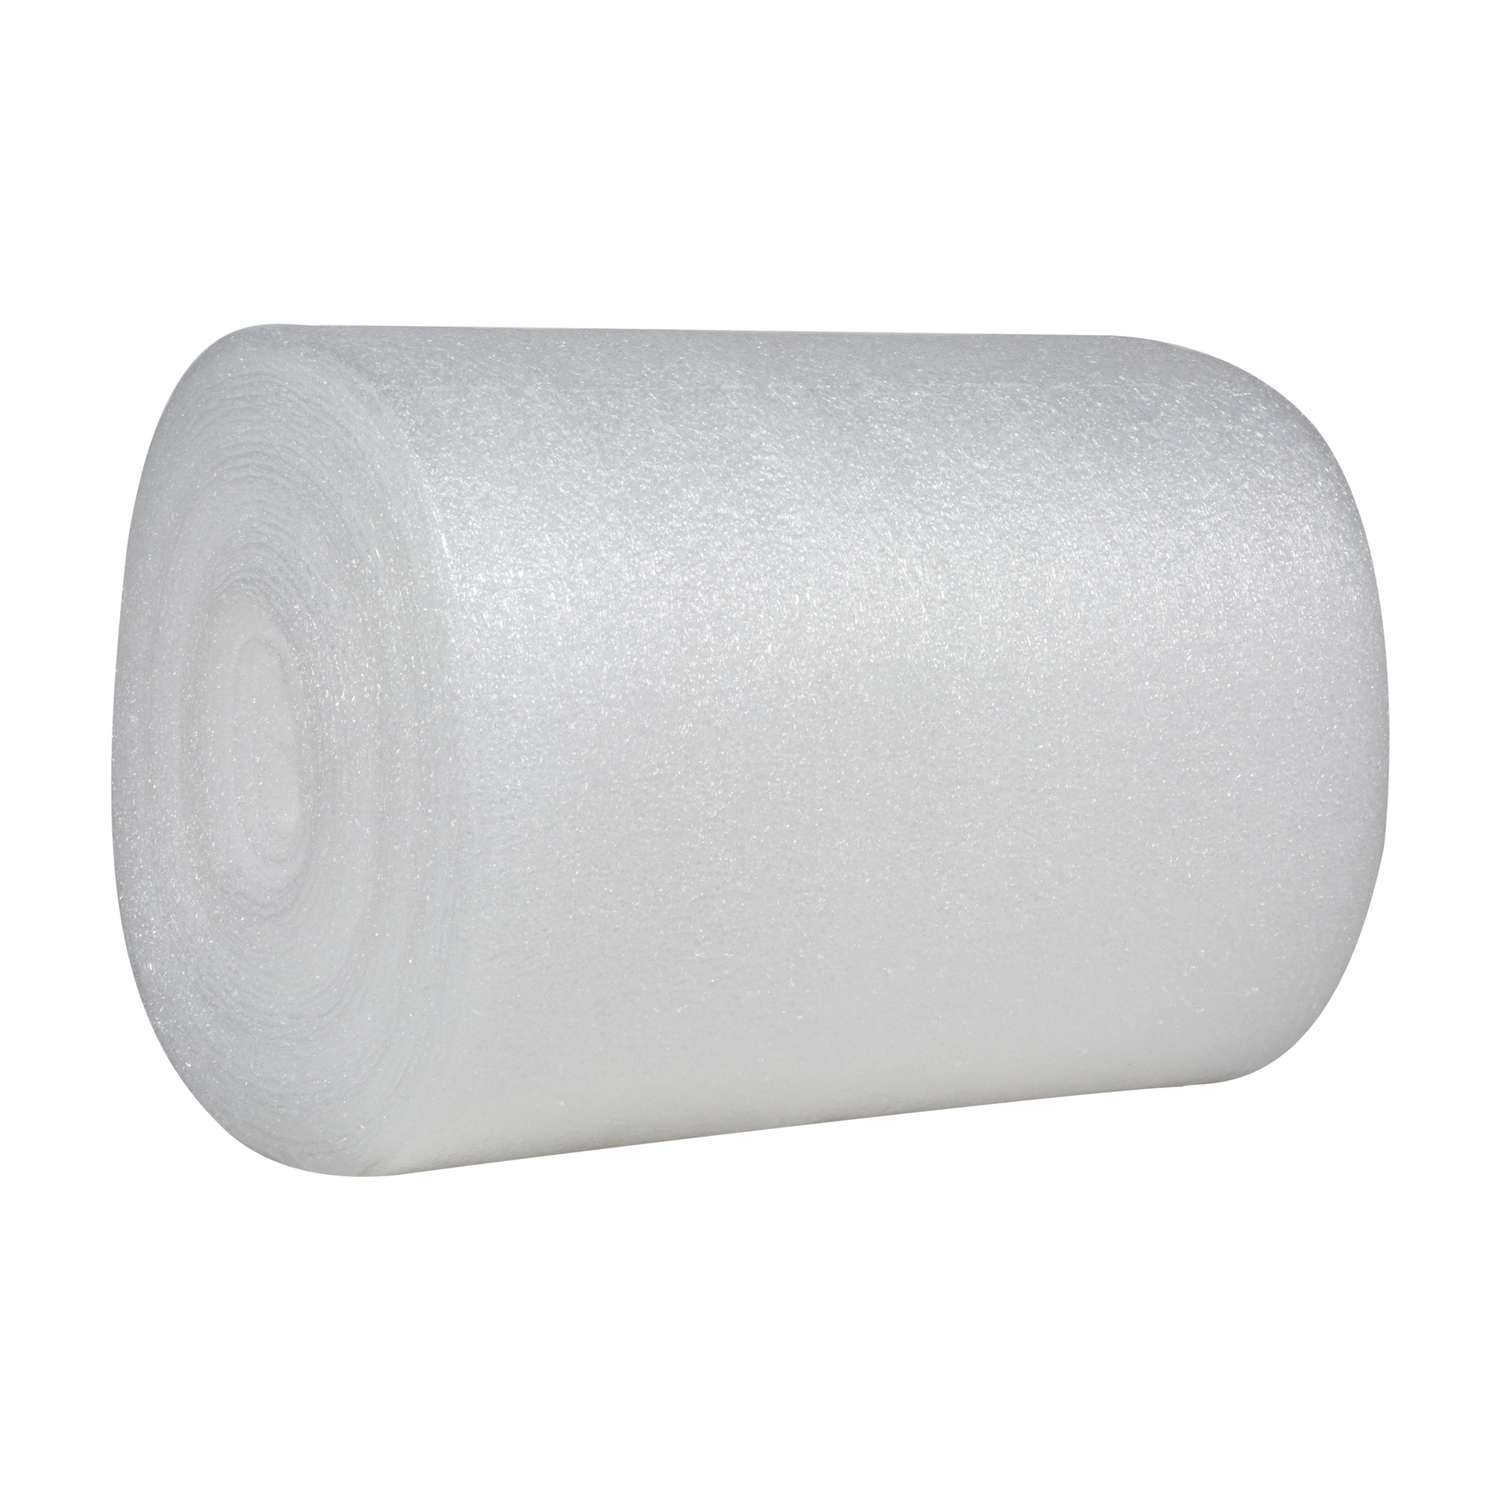 Upholstery Supplies Essentials: High-Grade Foam, Batting, Piping